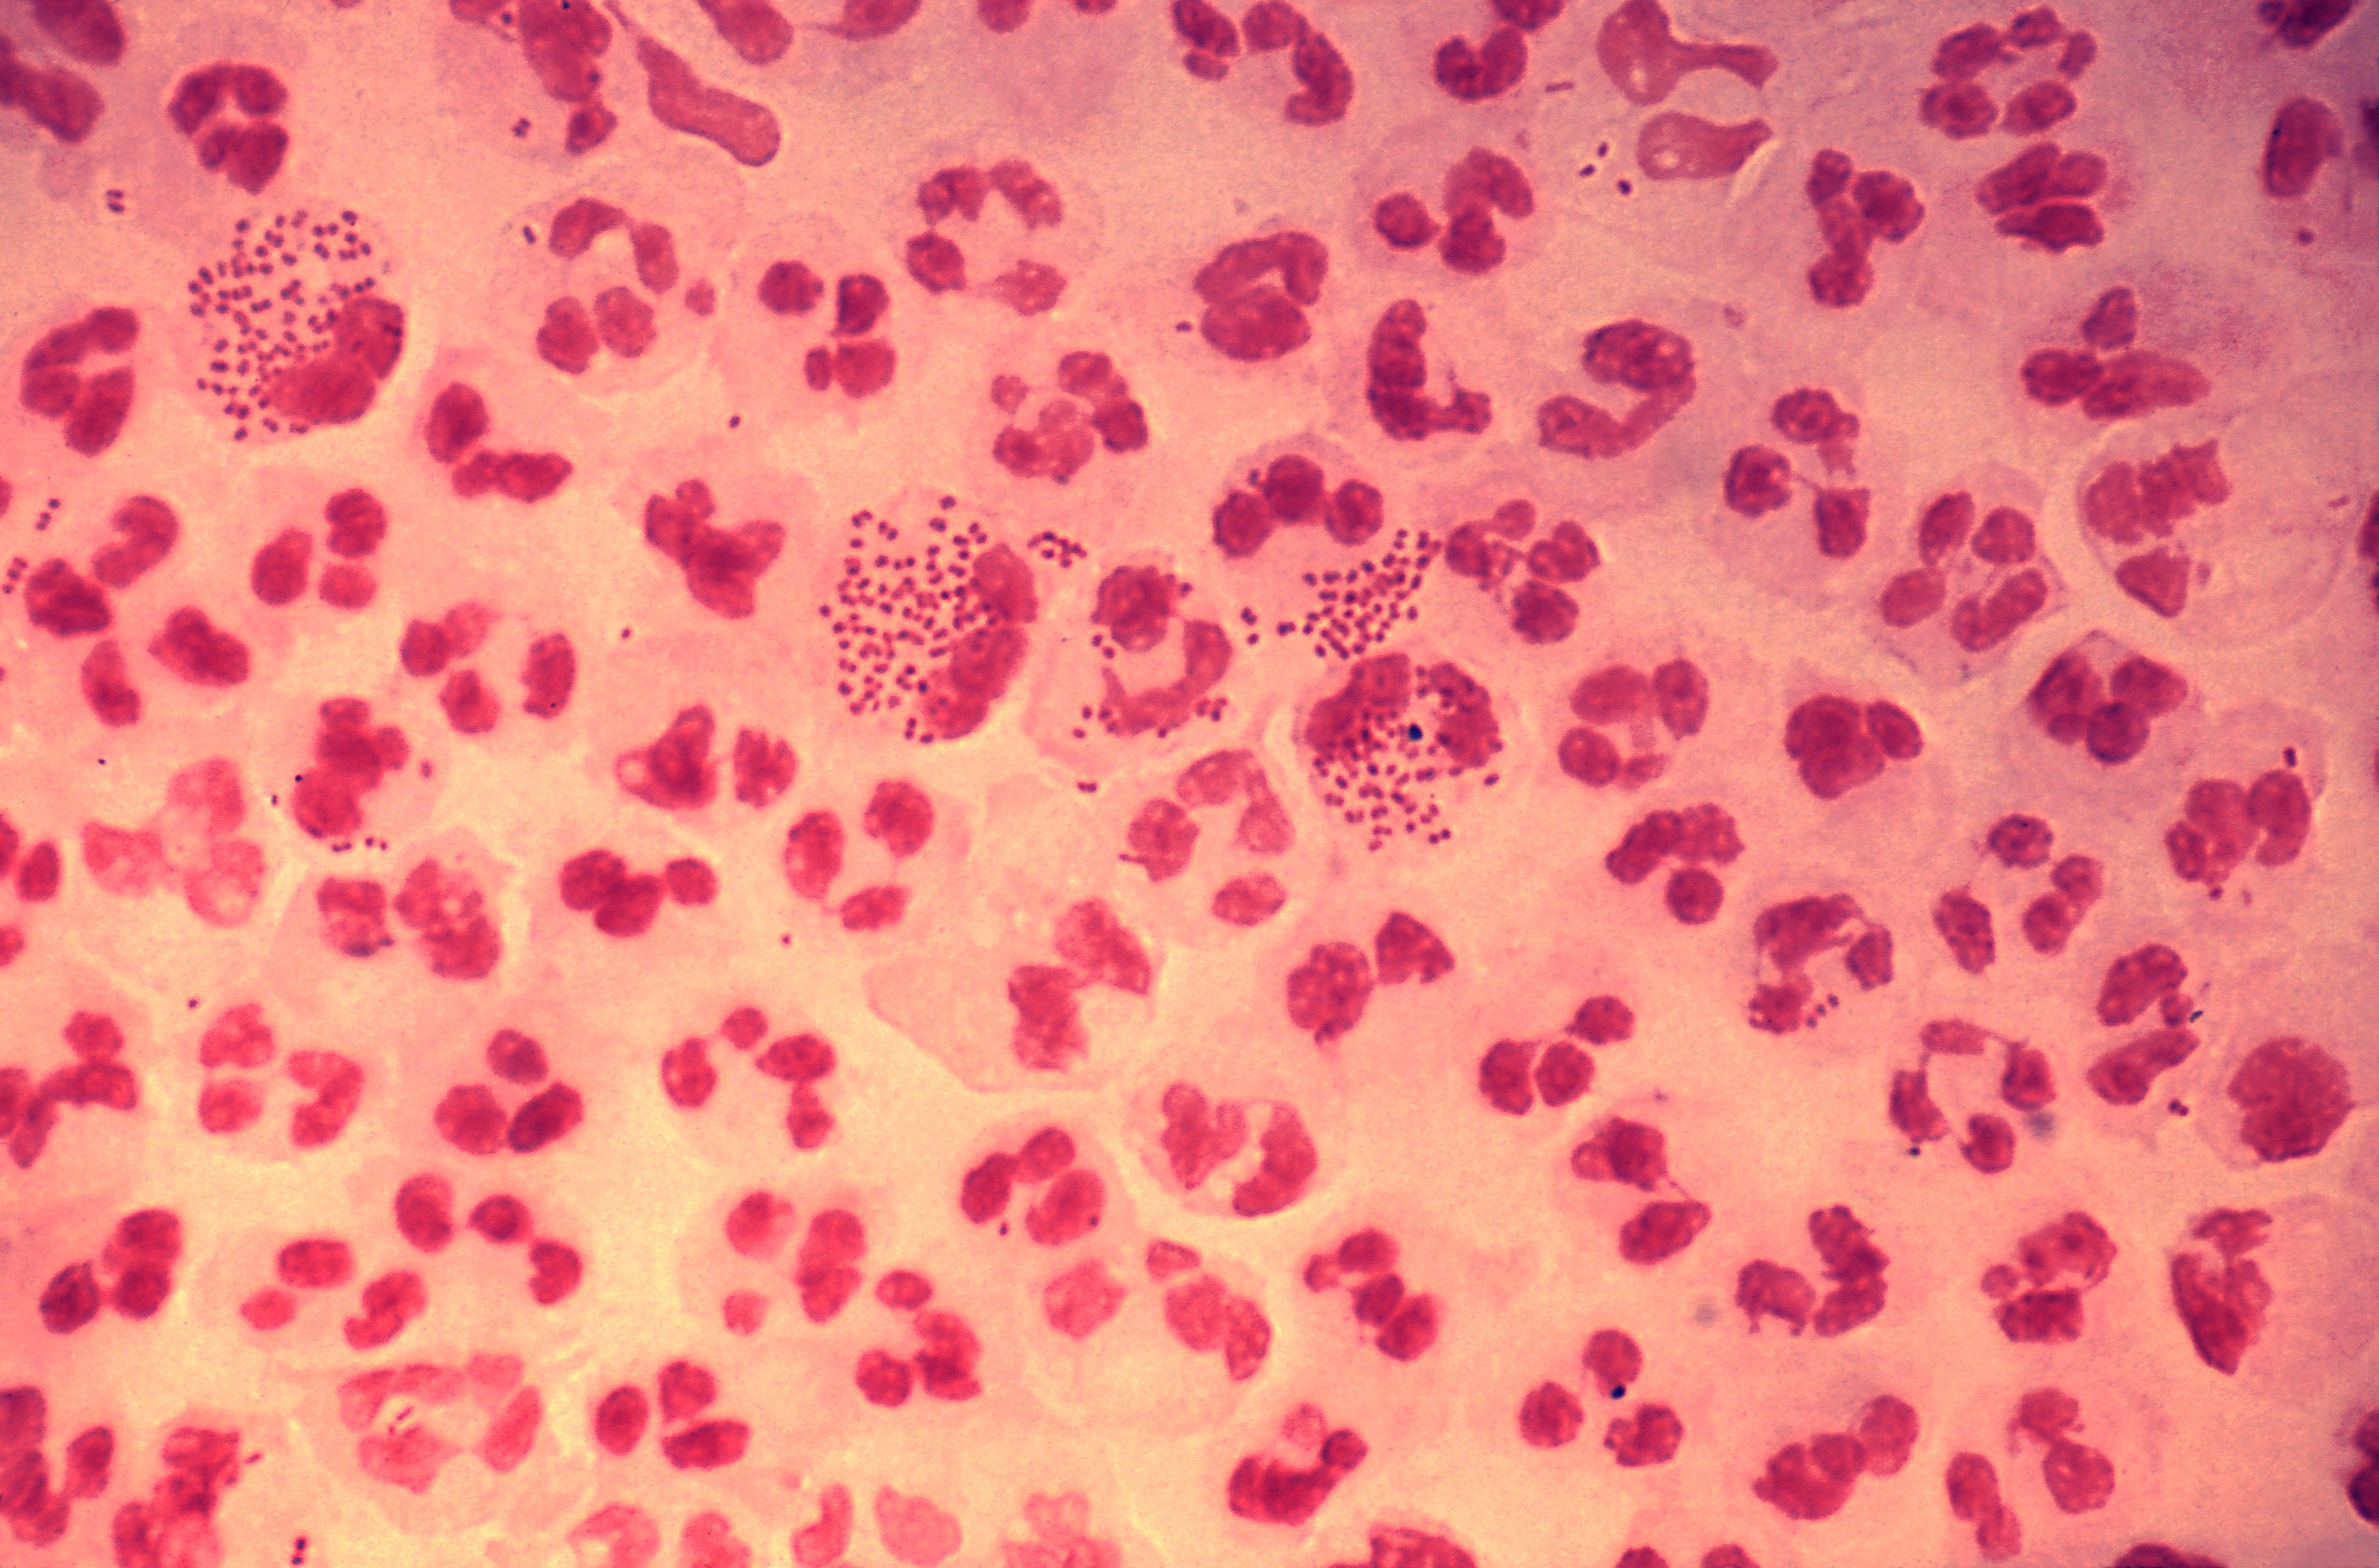 Amostra de bactéria causadora da gonorreia (Foto: Wikimedia Commons)